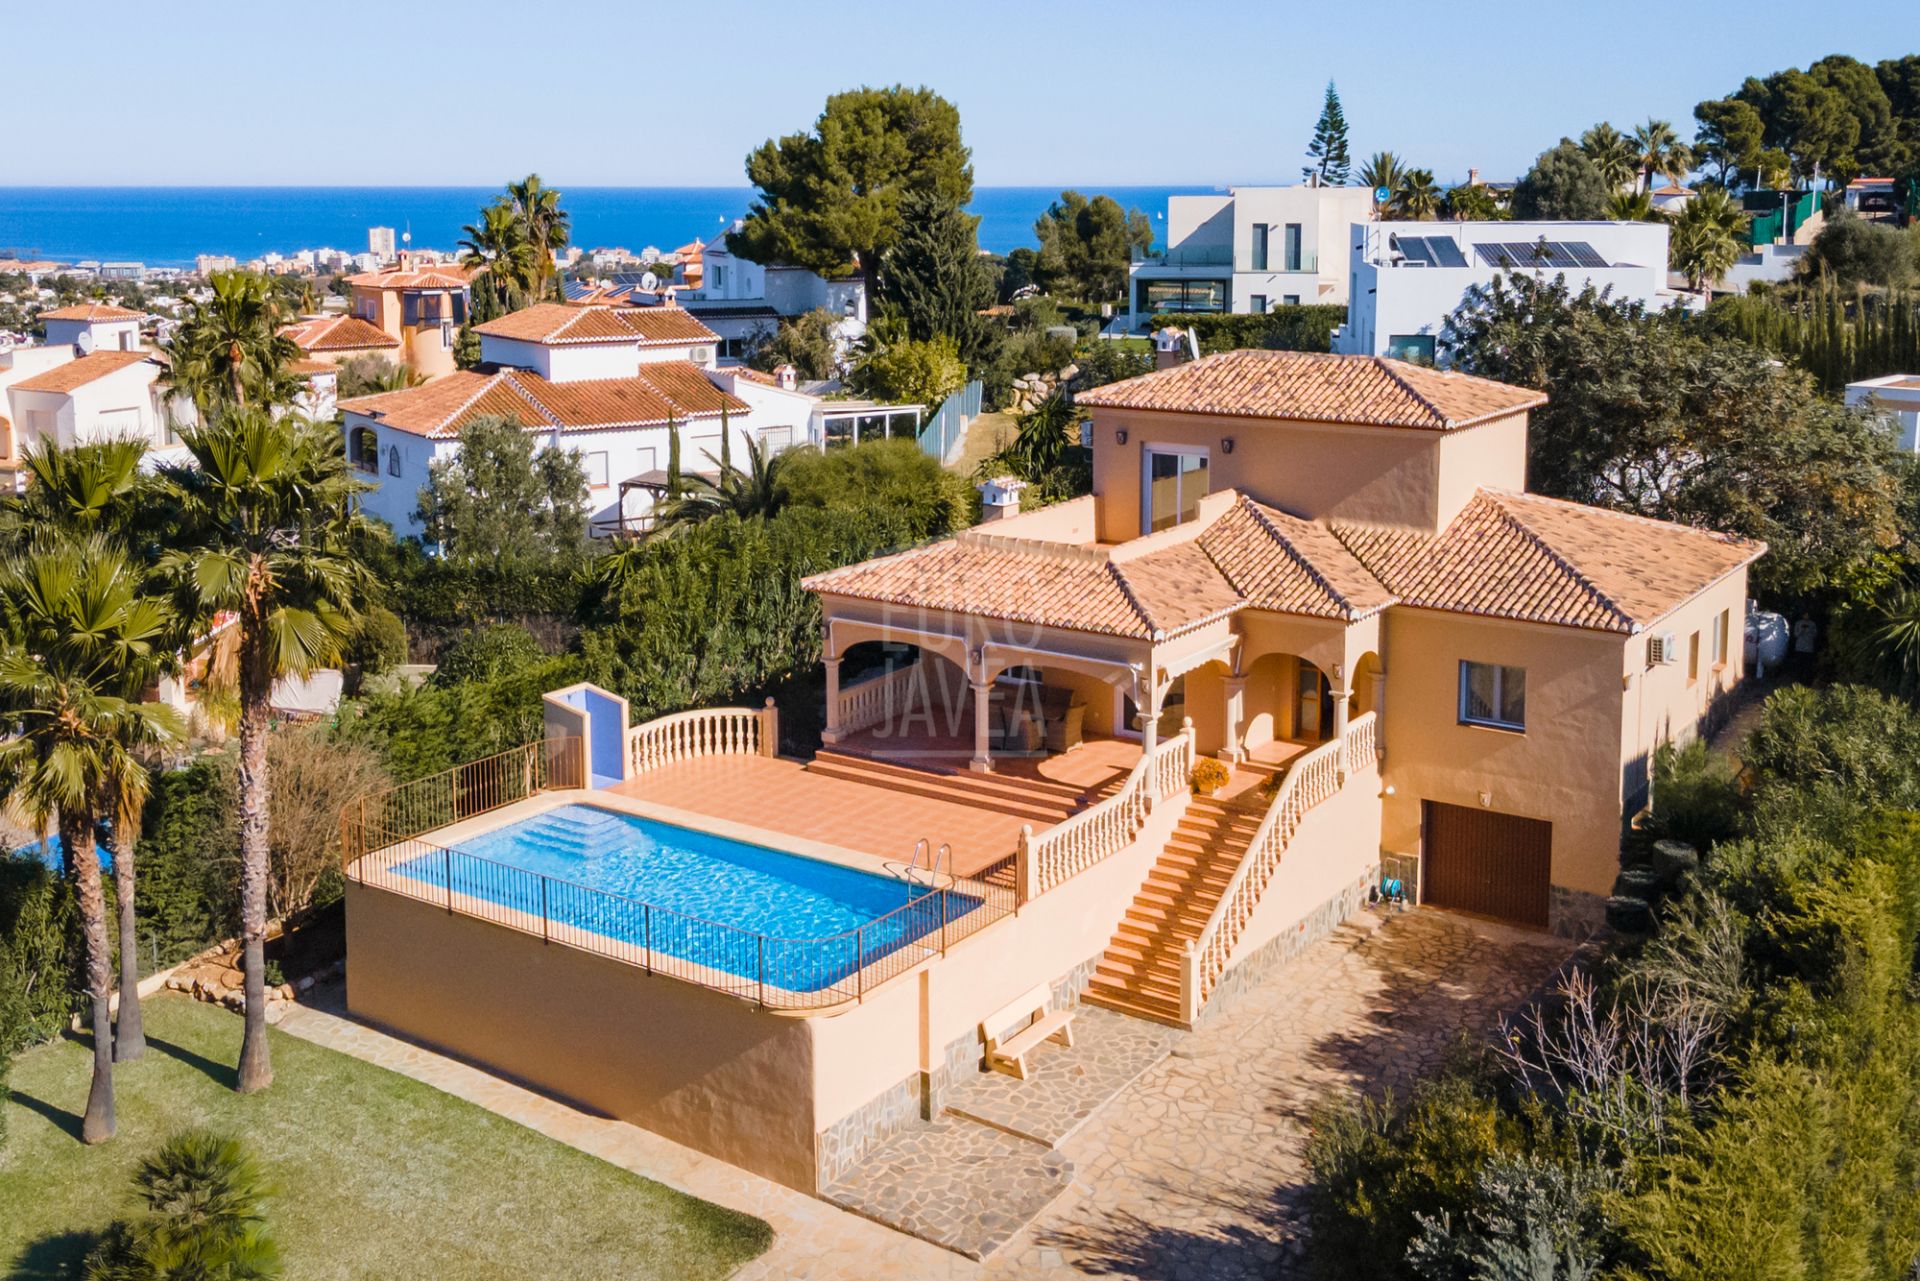 Villa exclusief te koop in het Pinomar-gebied, op een paar minuten van het strand